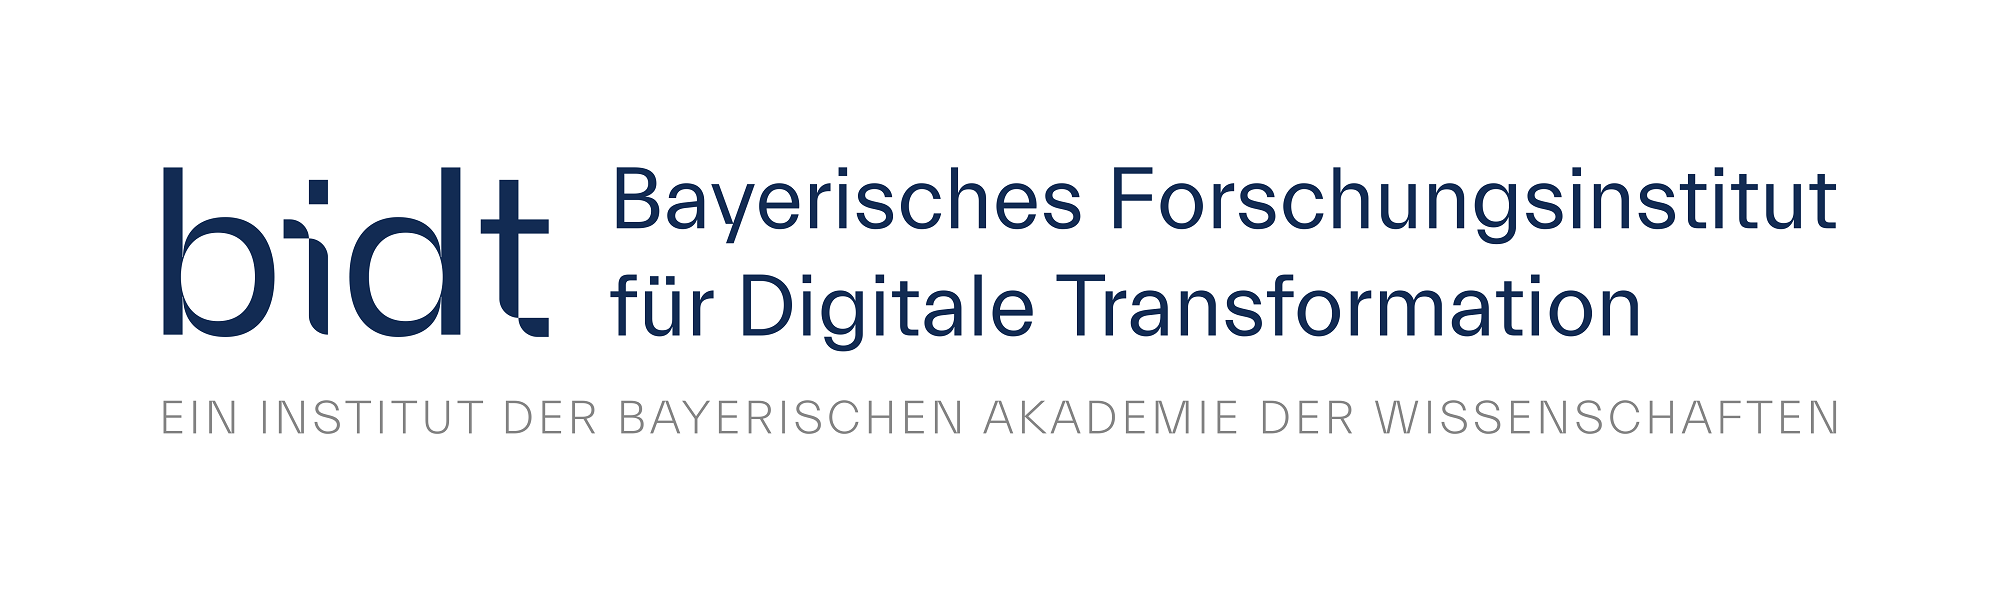 Logo: Bayerisches Forschungsinstitut für Digitale Transformation (bidt)